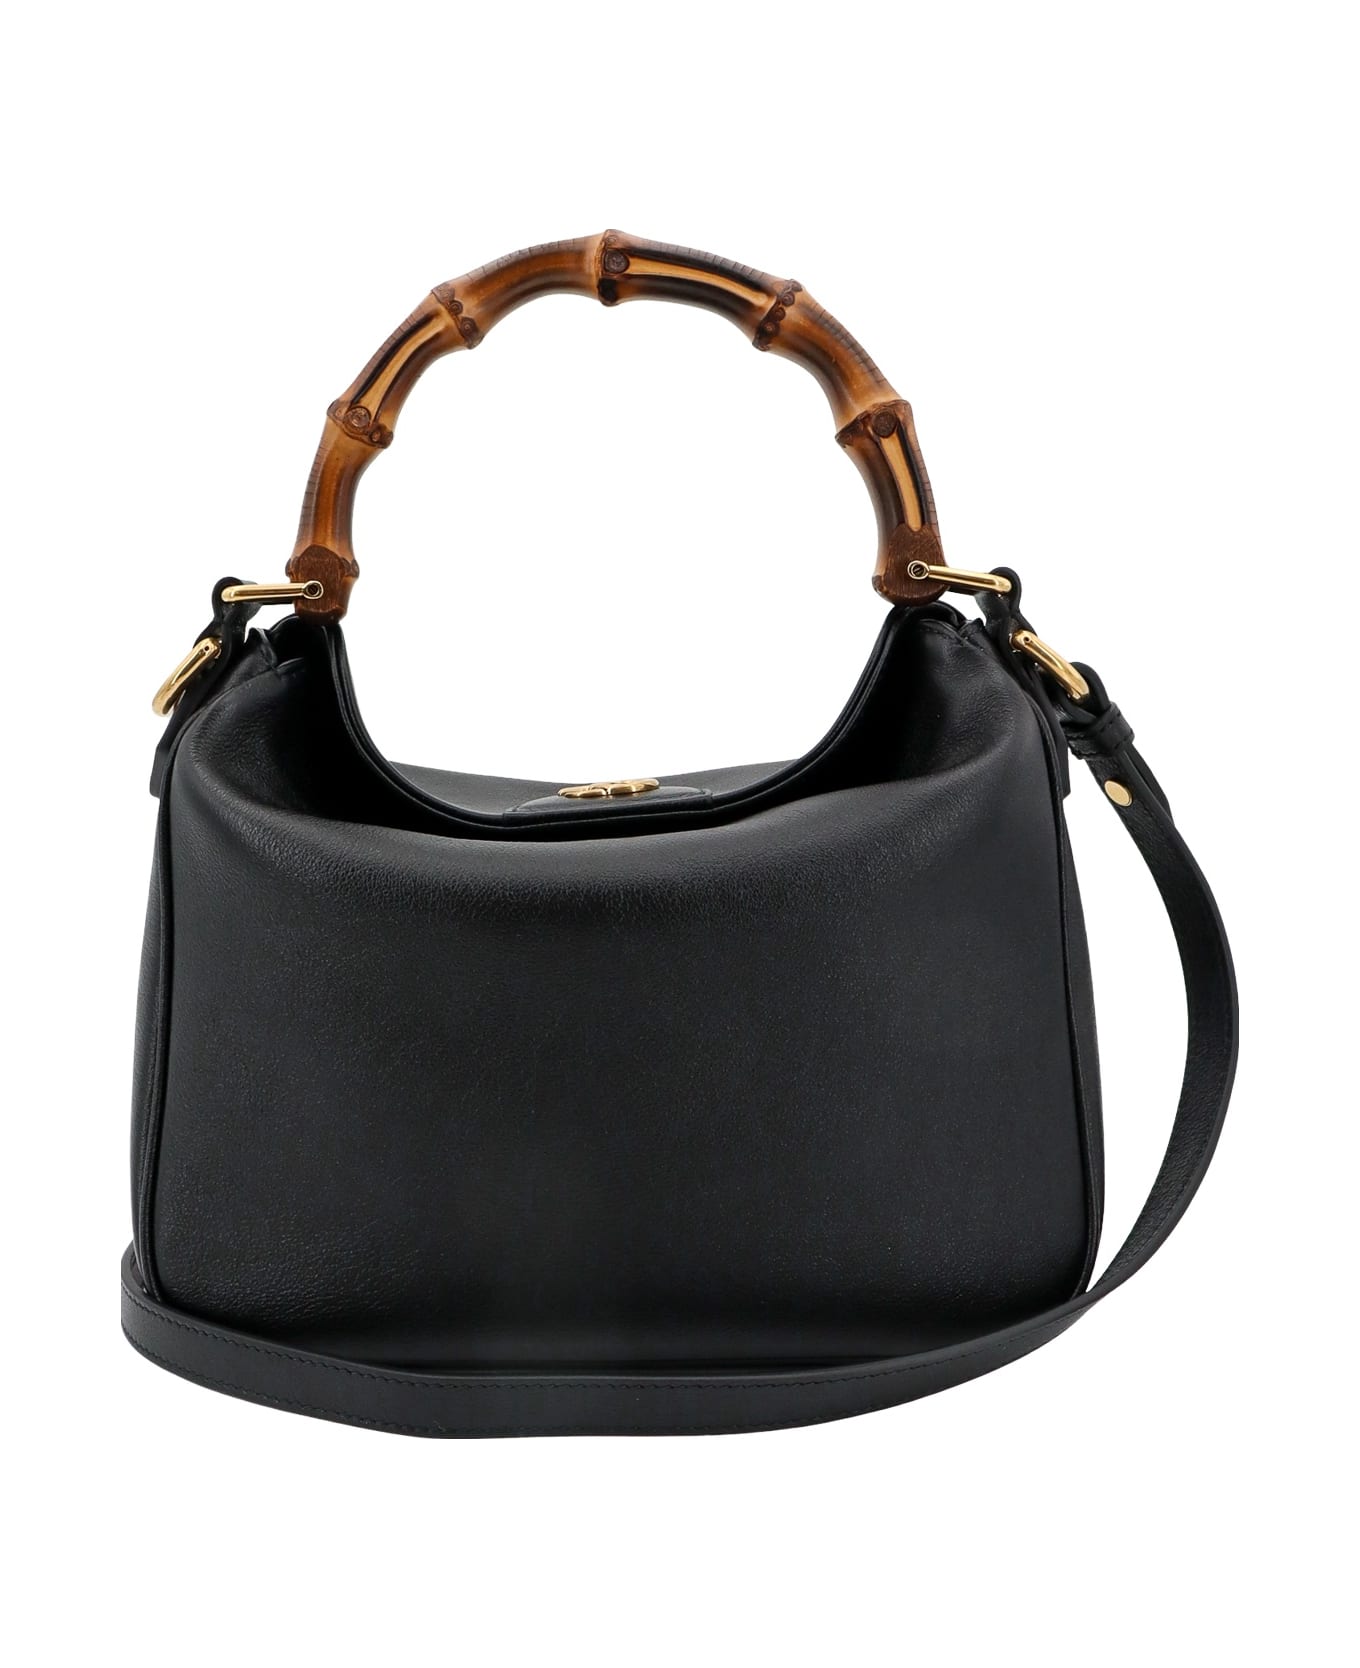 Gucci Diana Handbag - Black